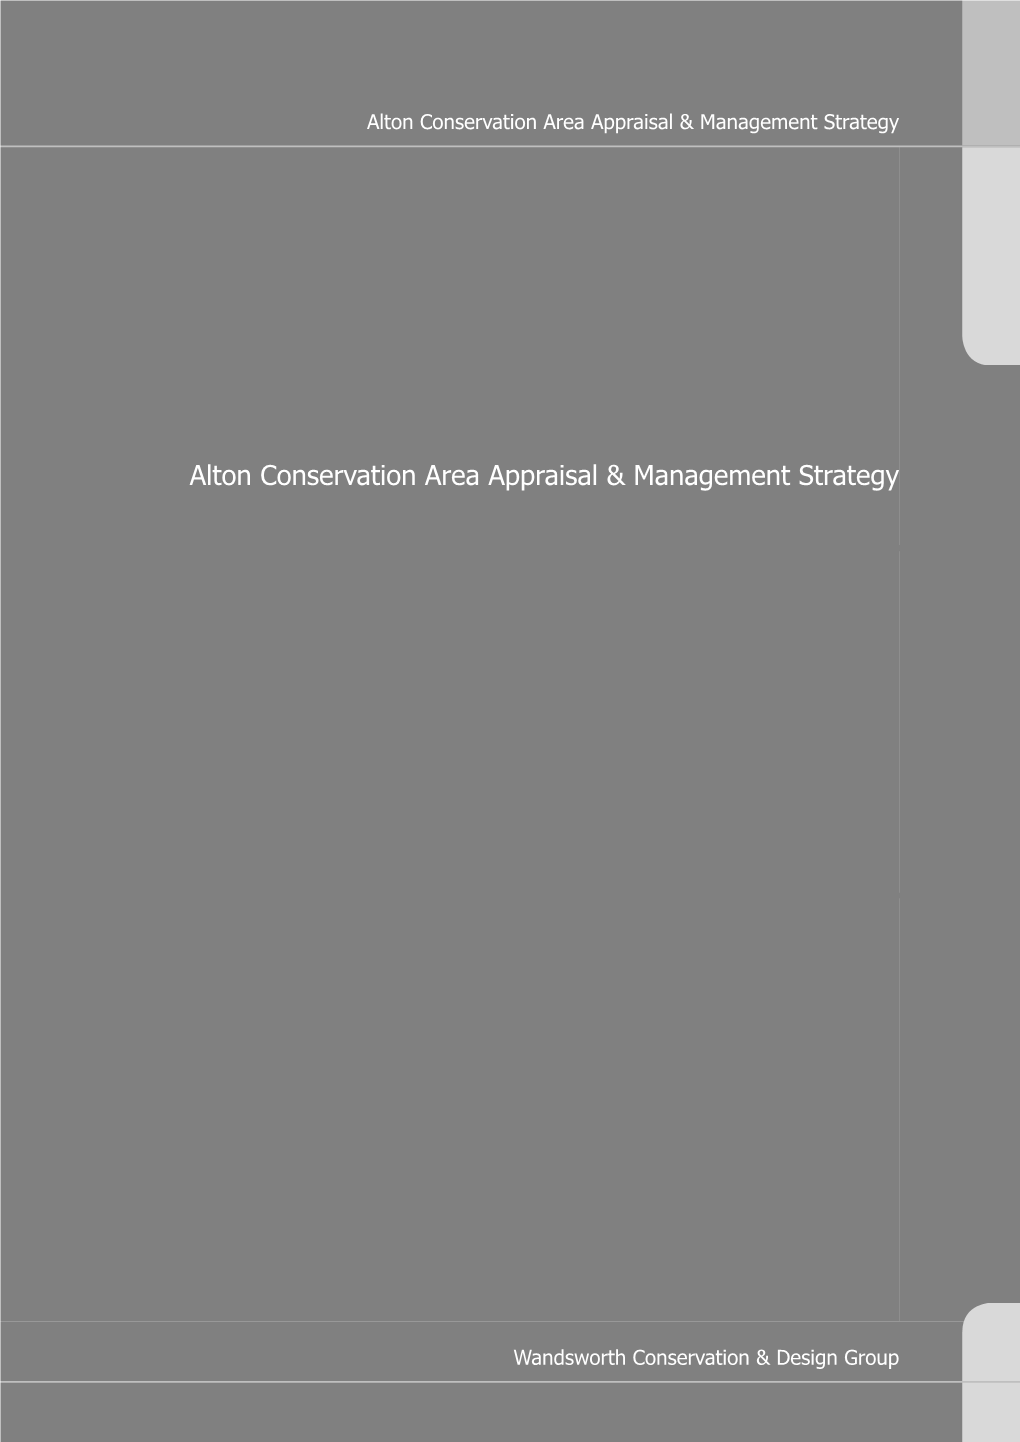 Alton Conservation Area Appraisal & Management Strategy